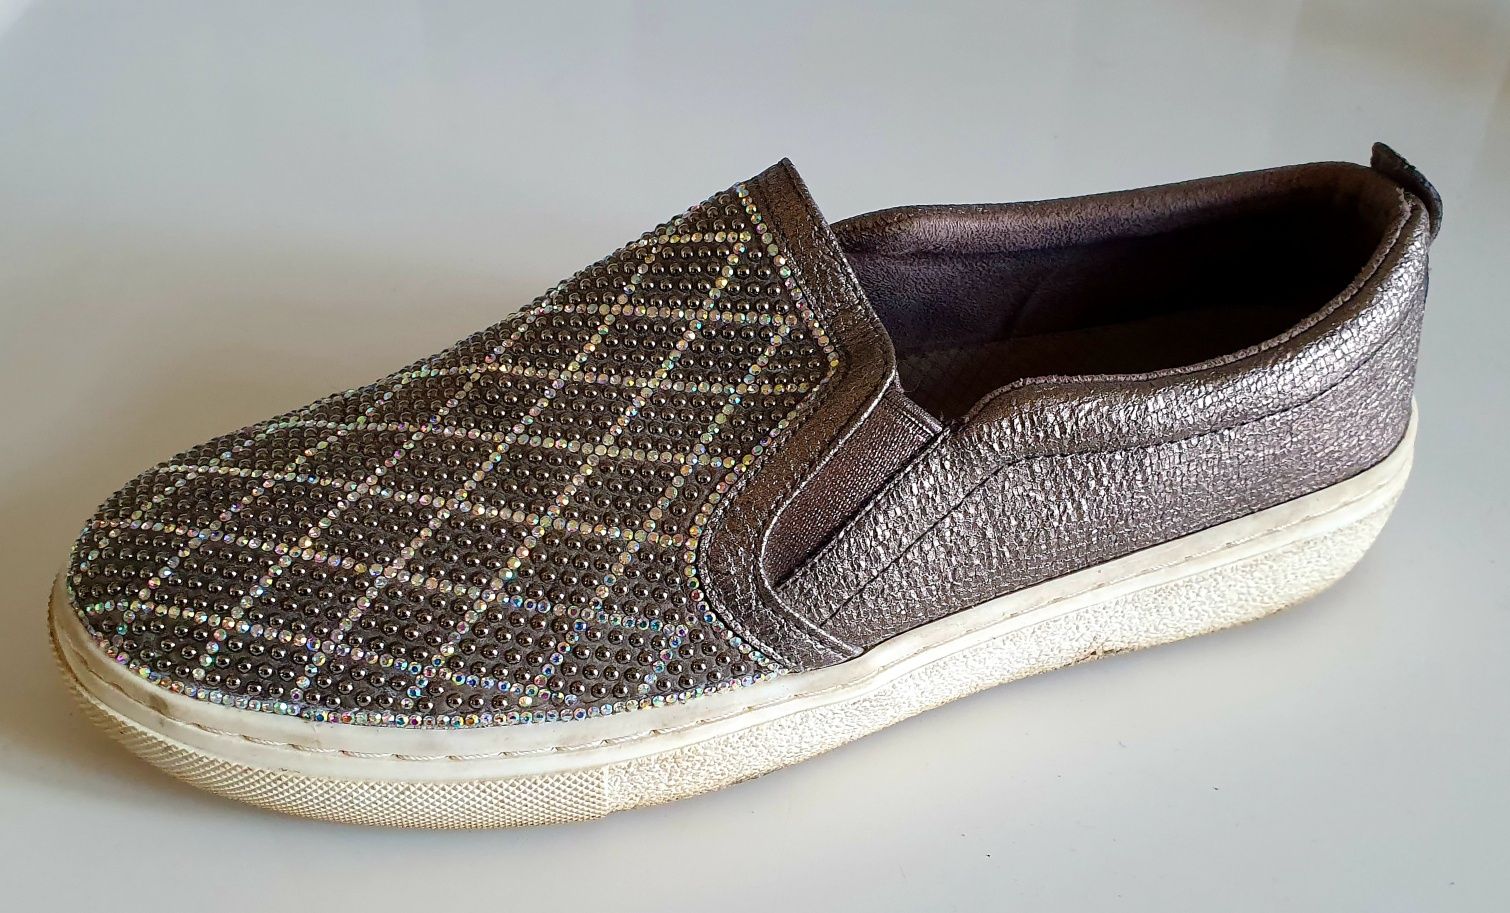 SKECHERS roz. 37.5 wkładka 24.5 cm slippers pięknie zdobione